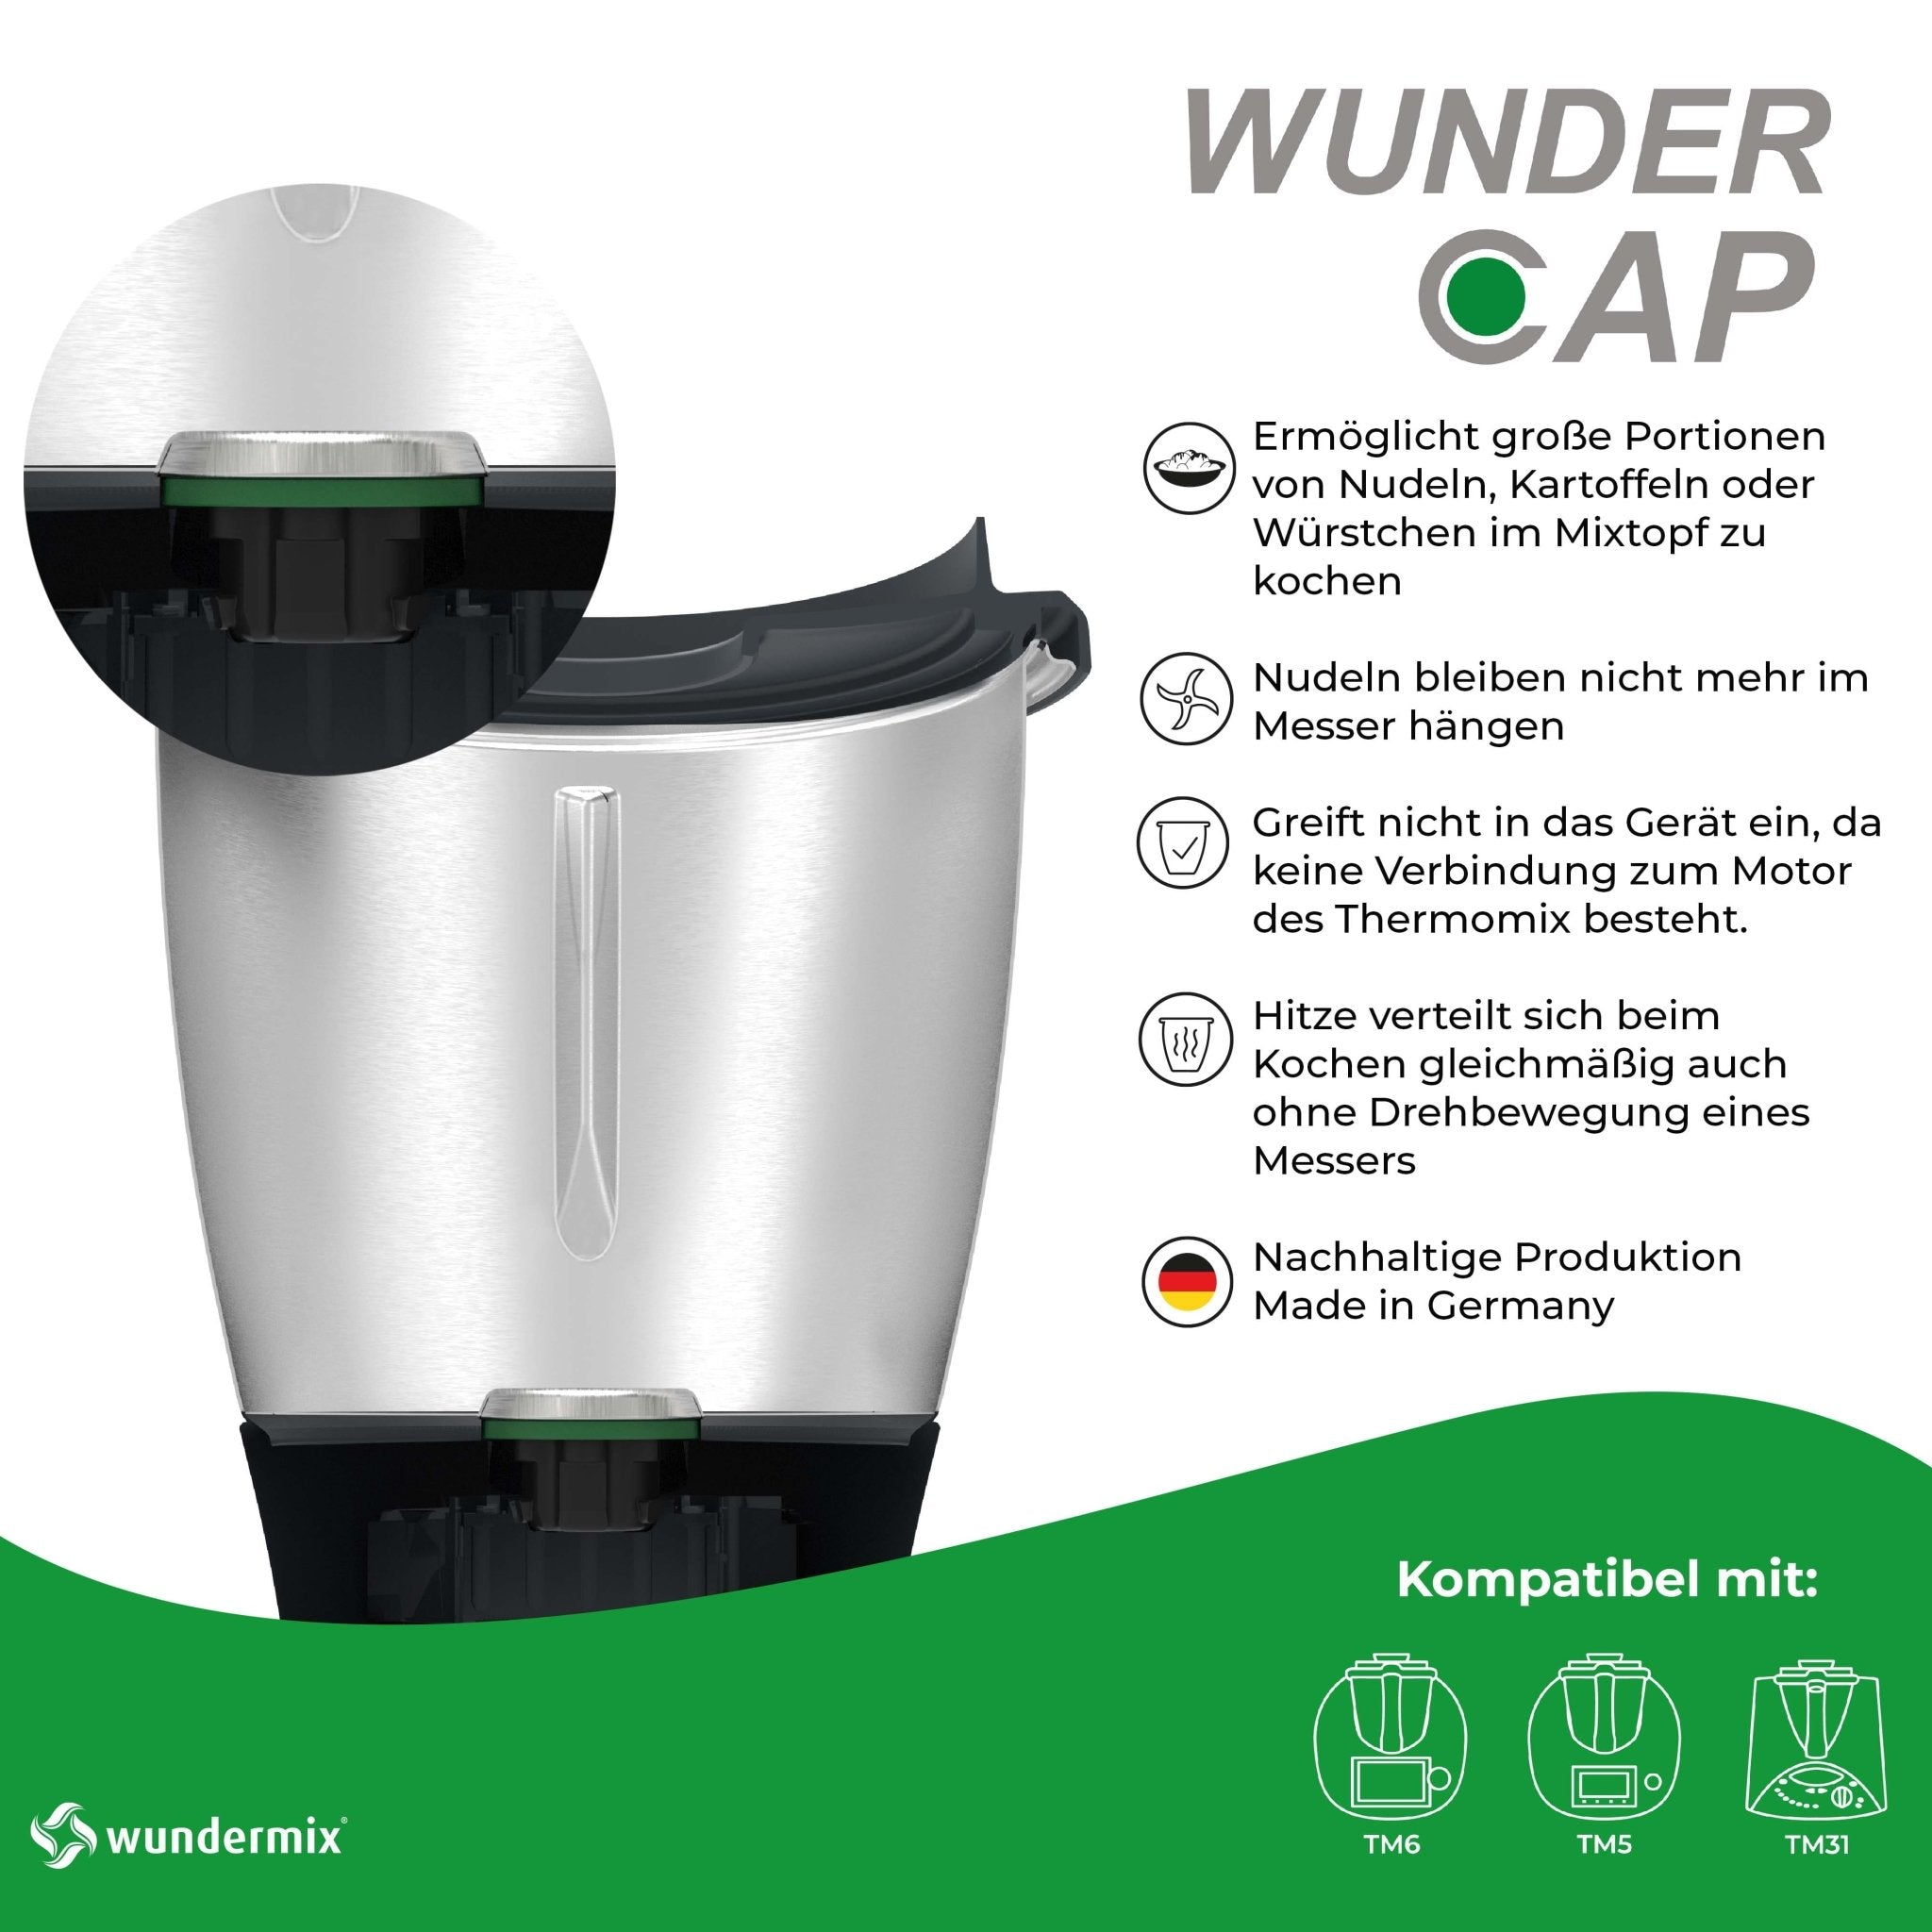 WunderCap® + FlexiSpatel® - Wundermix GmbH